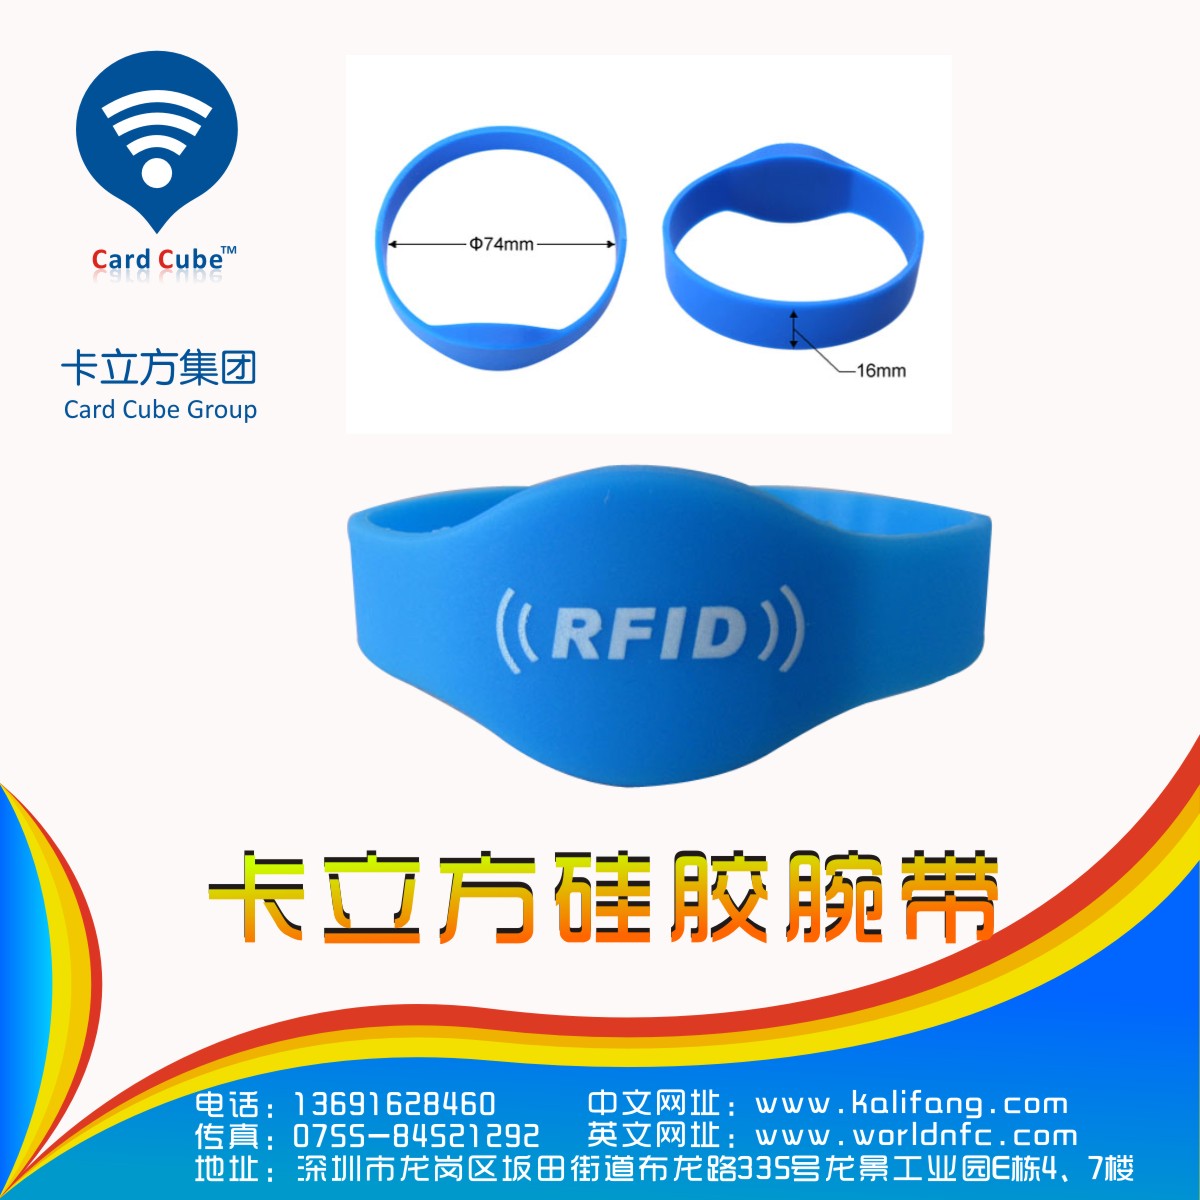 卡立方RFID腕带标签介绍身份识别腕带厂家那里有? 卡立方腕带